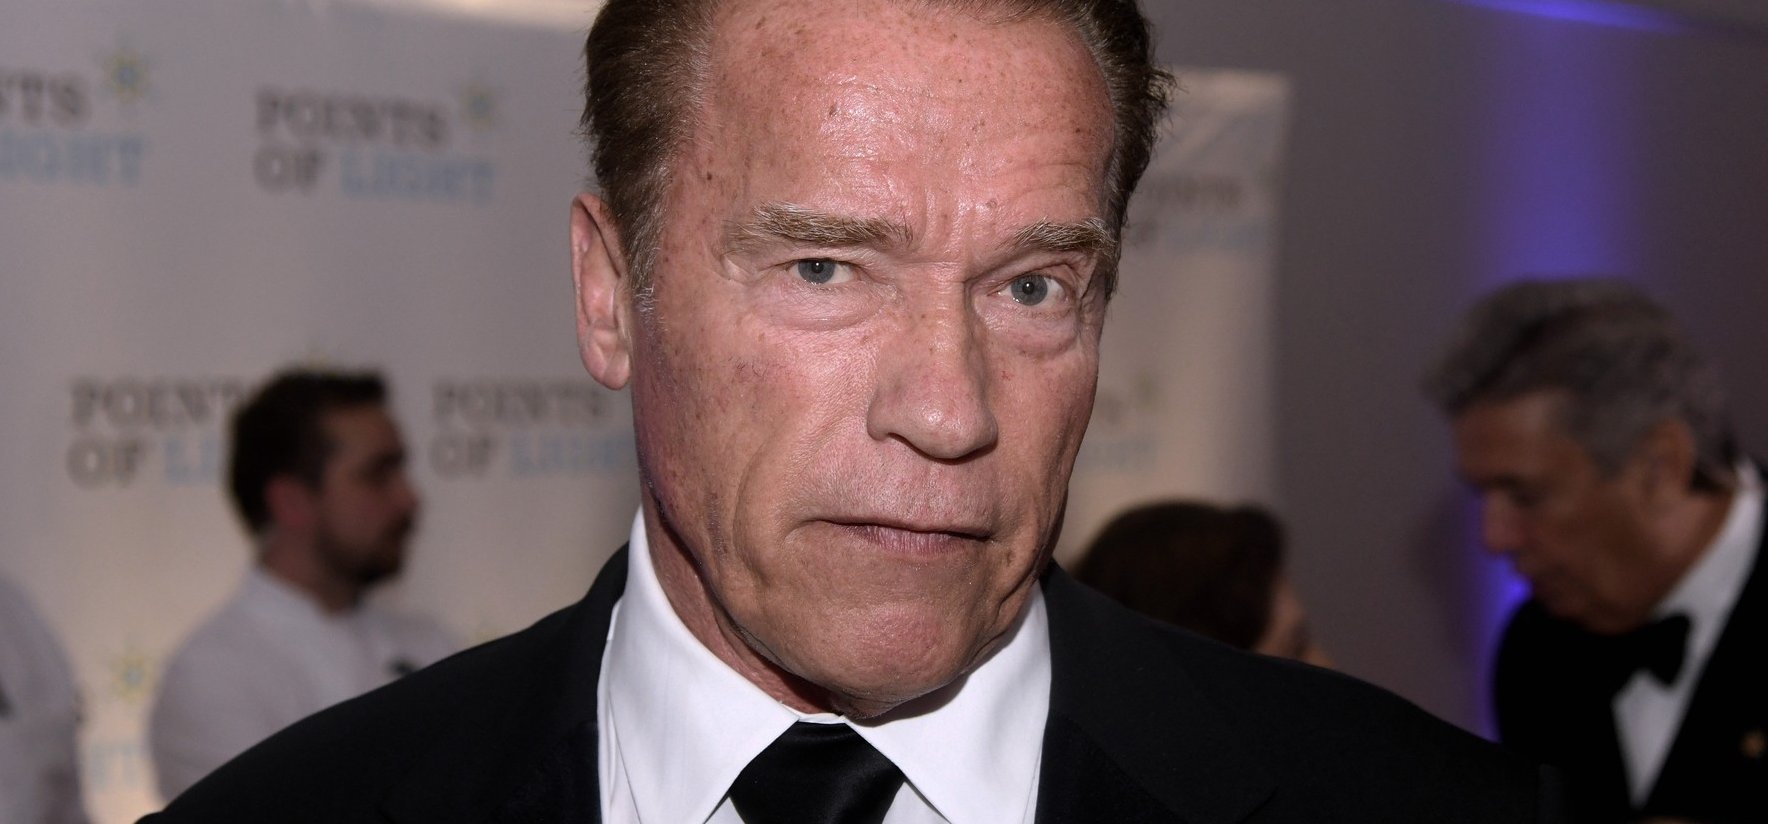 Arnold Schwarzenegger a balesete után elővette a kedvenc autóját – fotók